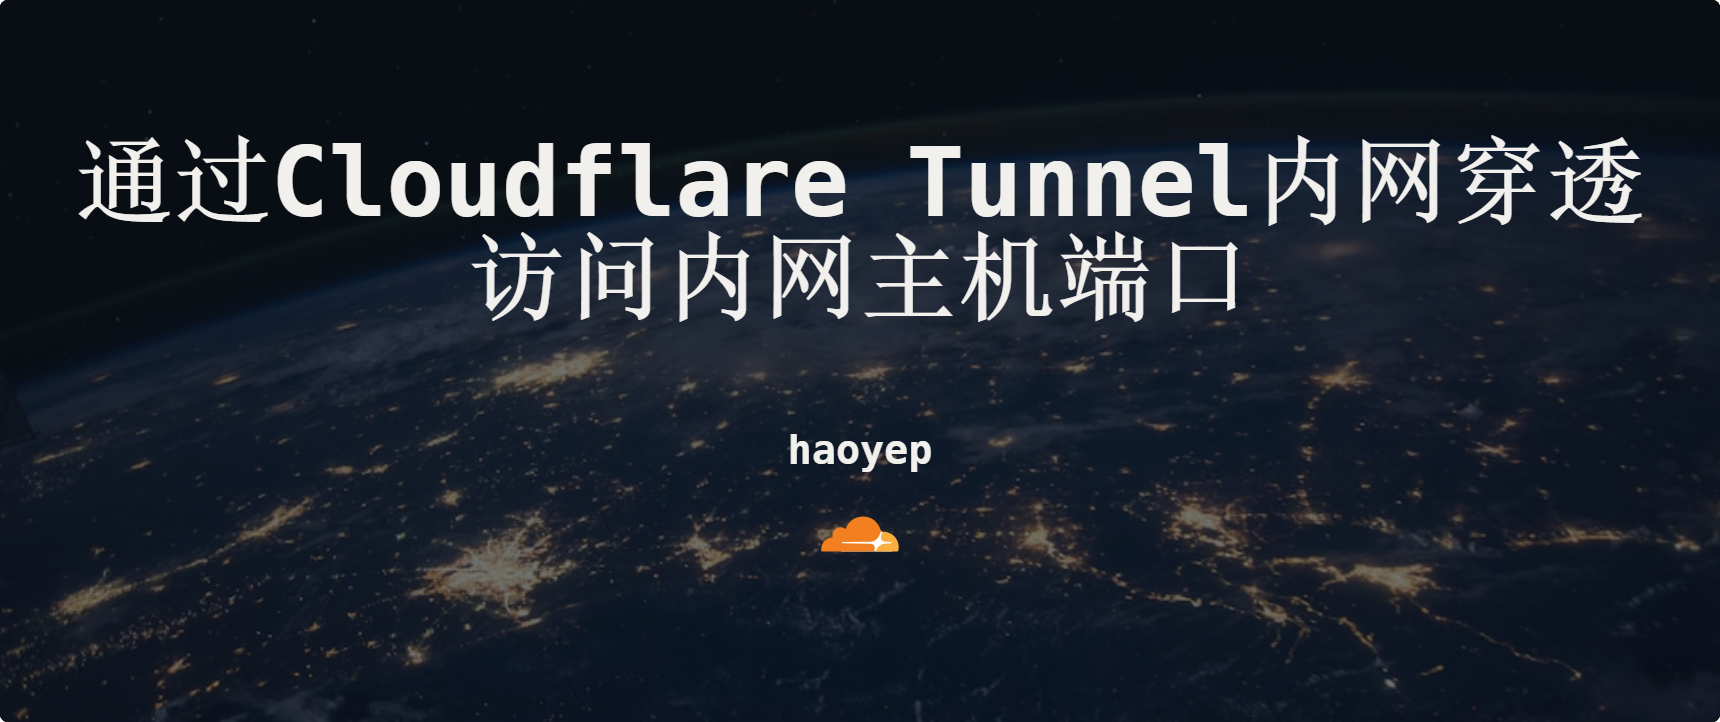 通过Cloudflare tunnel访问内网端口